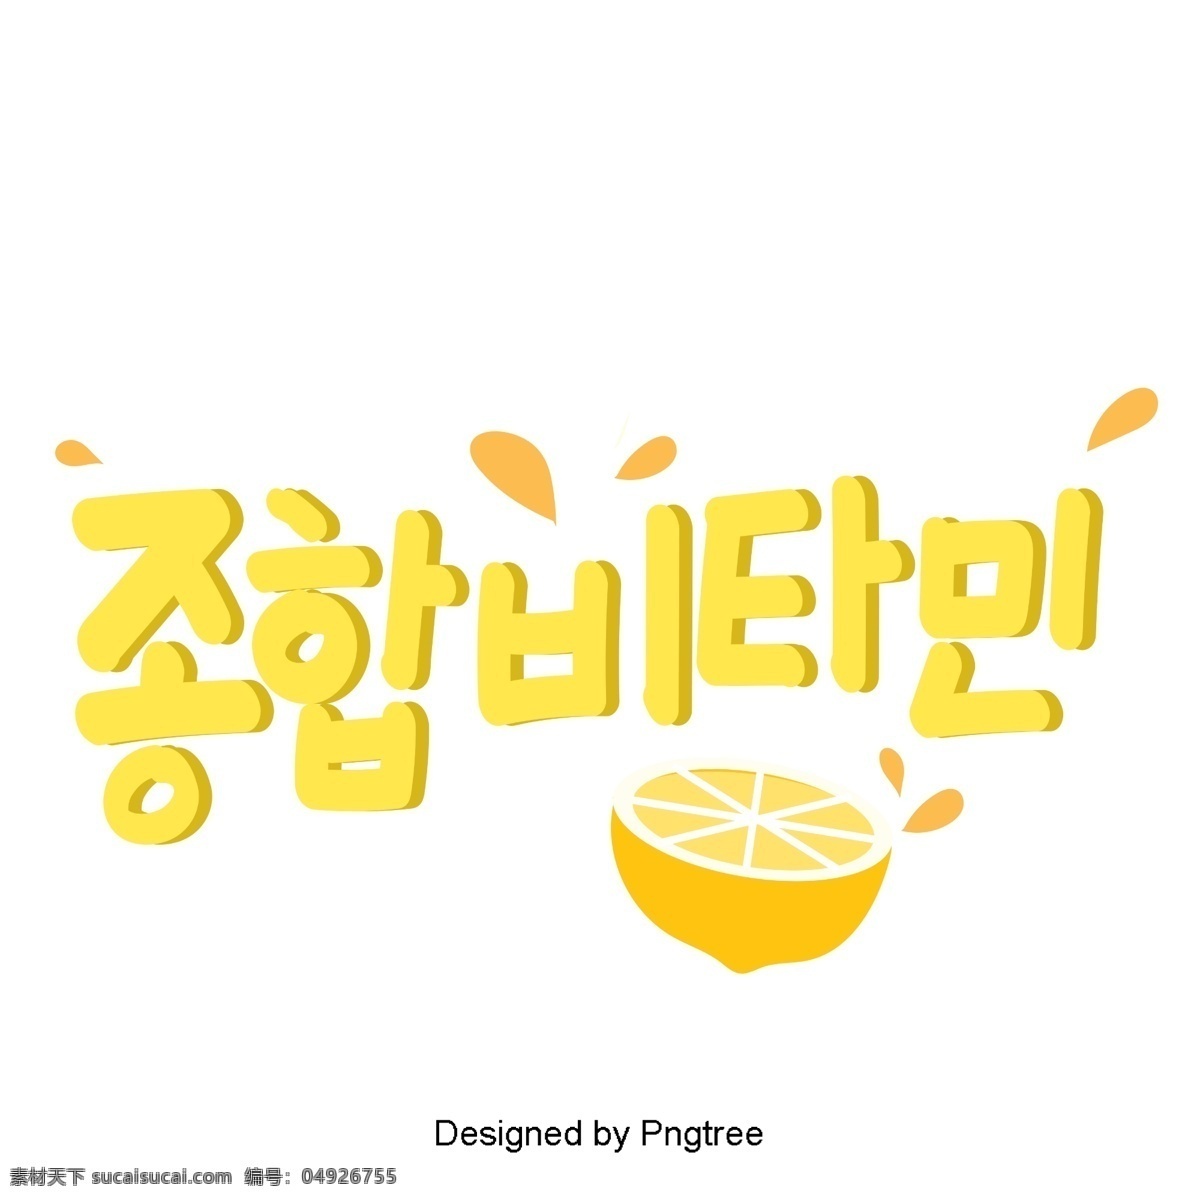 韩国 水果 柠檬 元素 手 一个 可爱 风格 手写 字体 韩文 字形 移动支付 移动支付方式 动画片 黄色 维生素的功能